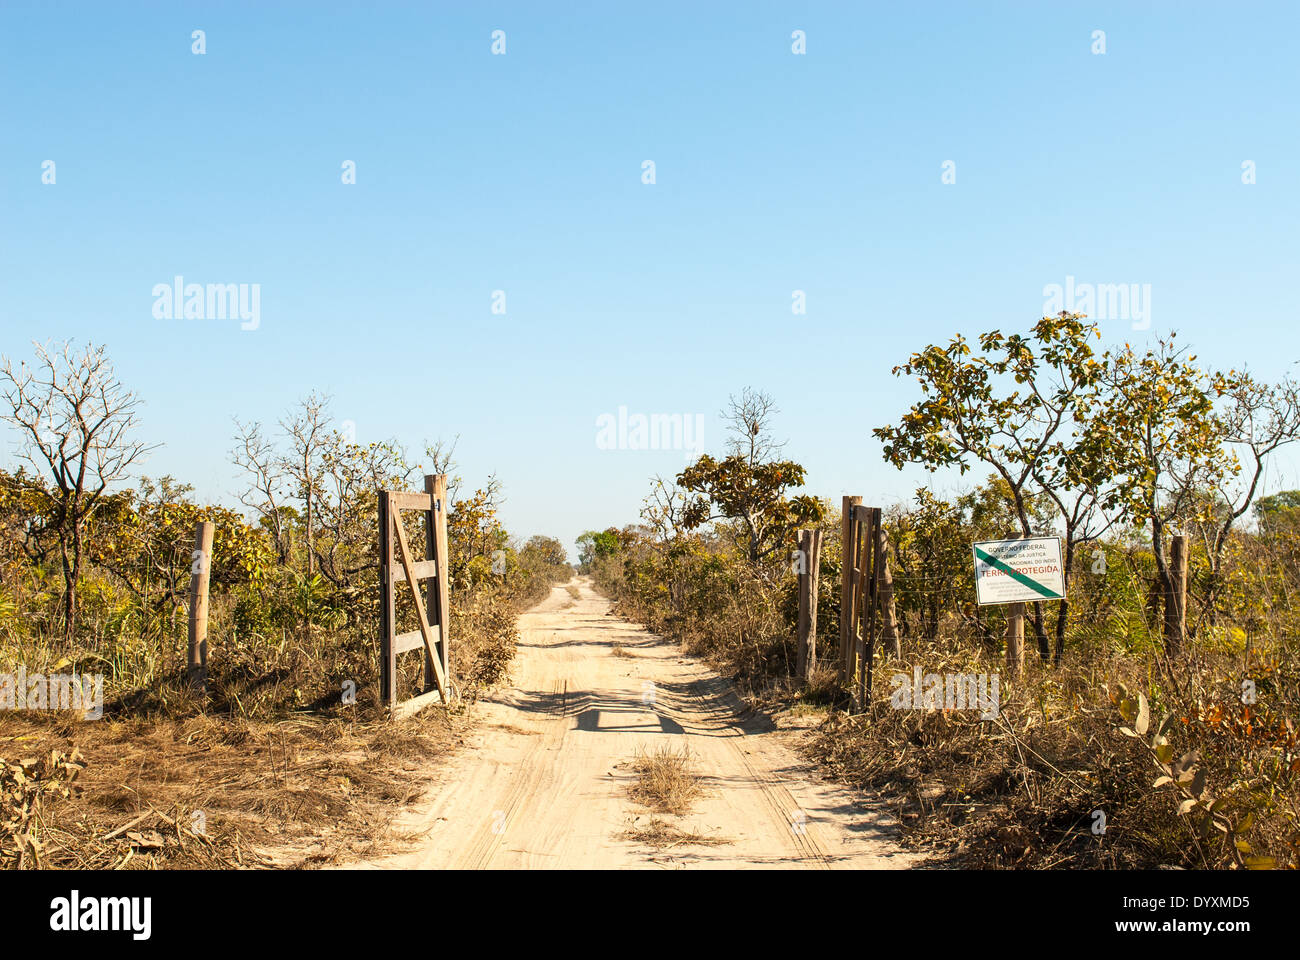 El estado de Mato Grosso, Brasil. Entrada al Parque Indígena de Xingu con FUNAI sign'tierras protegidas, sin acceso para los extraños". Foto de stock